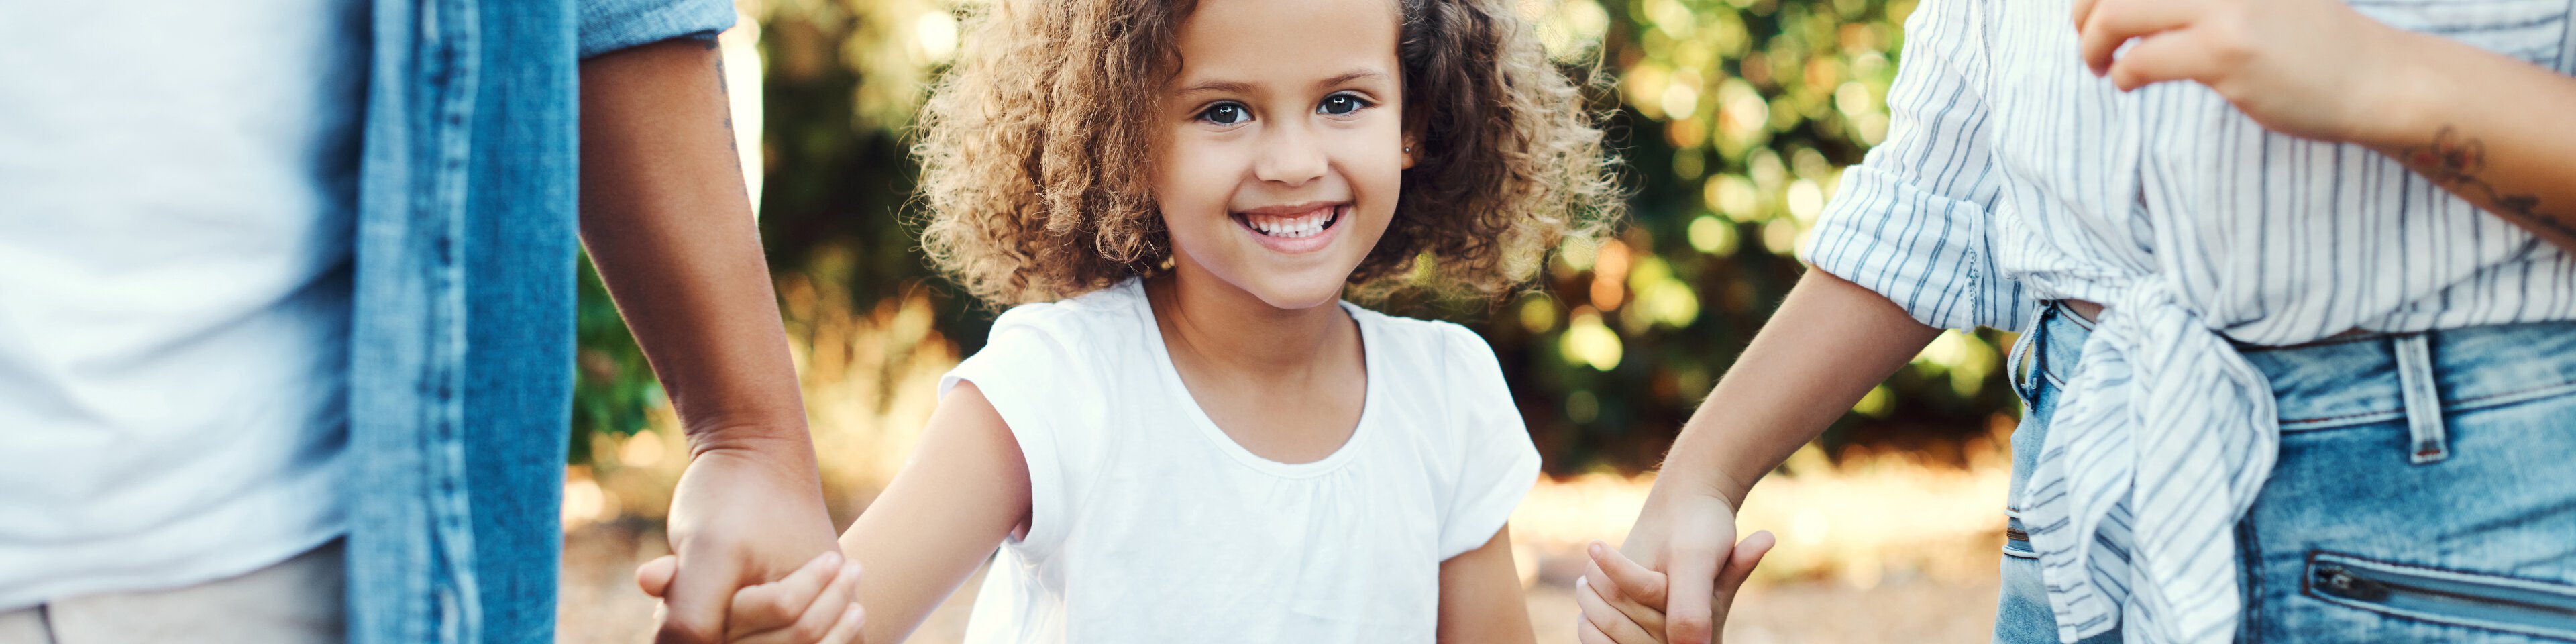 Ein kleines Mädchen mit braunen lockigen Haaren wird von seinen Eltern an beiden Händen gehalten | © PeopleImages - Getty Images/iStockphoto